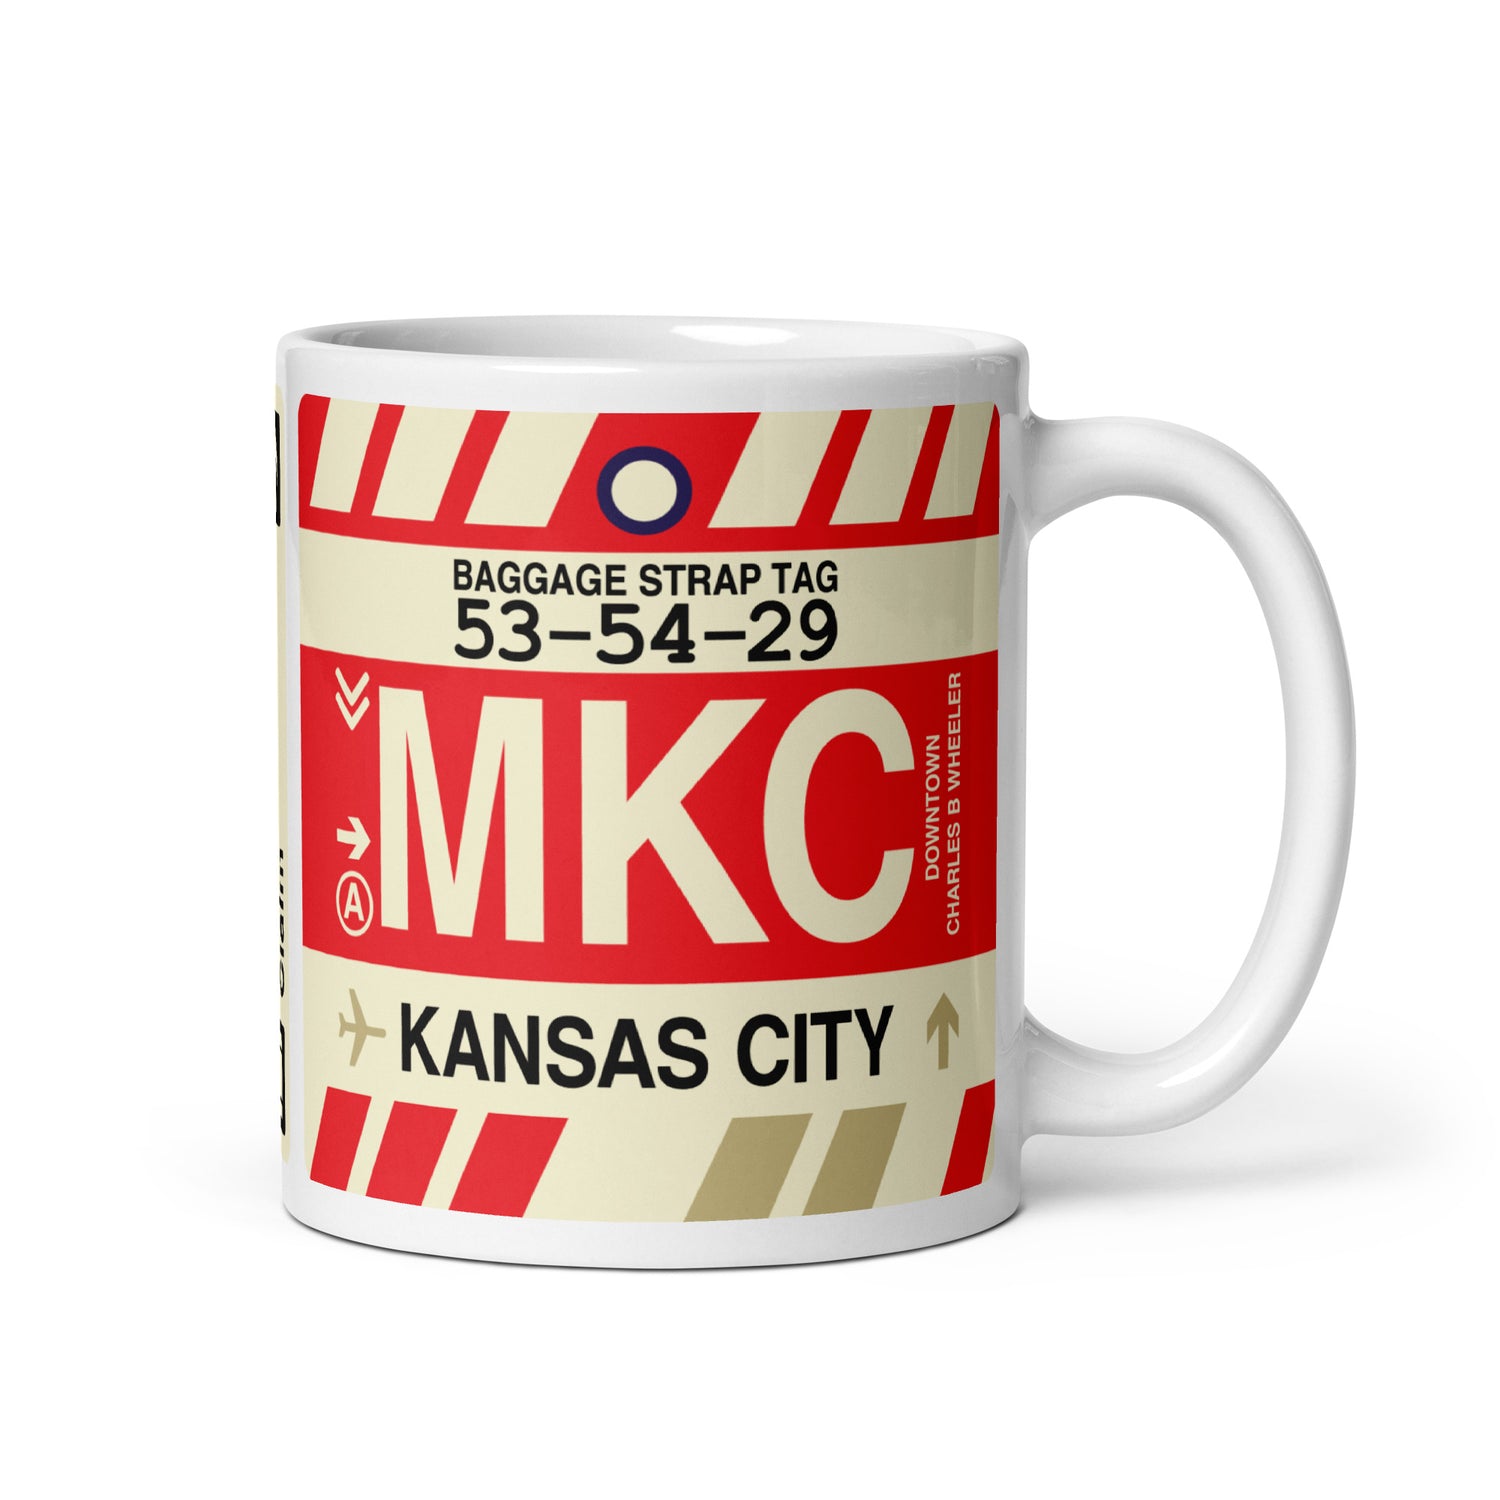 Kansas City Missouri Coffee Mugs and Water Bottles • MKC Airport Code